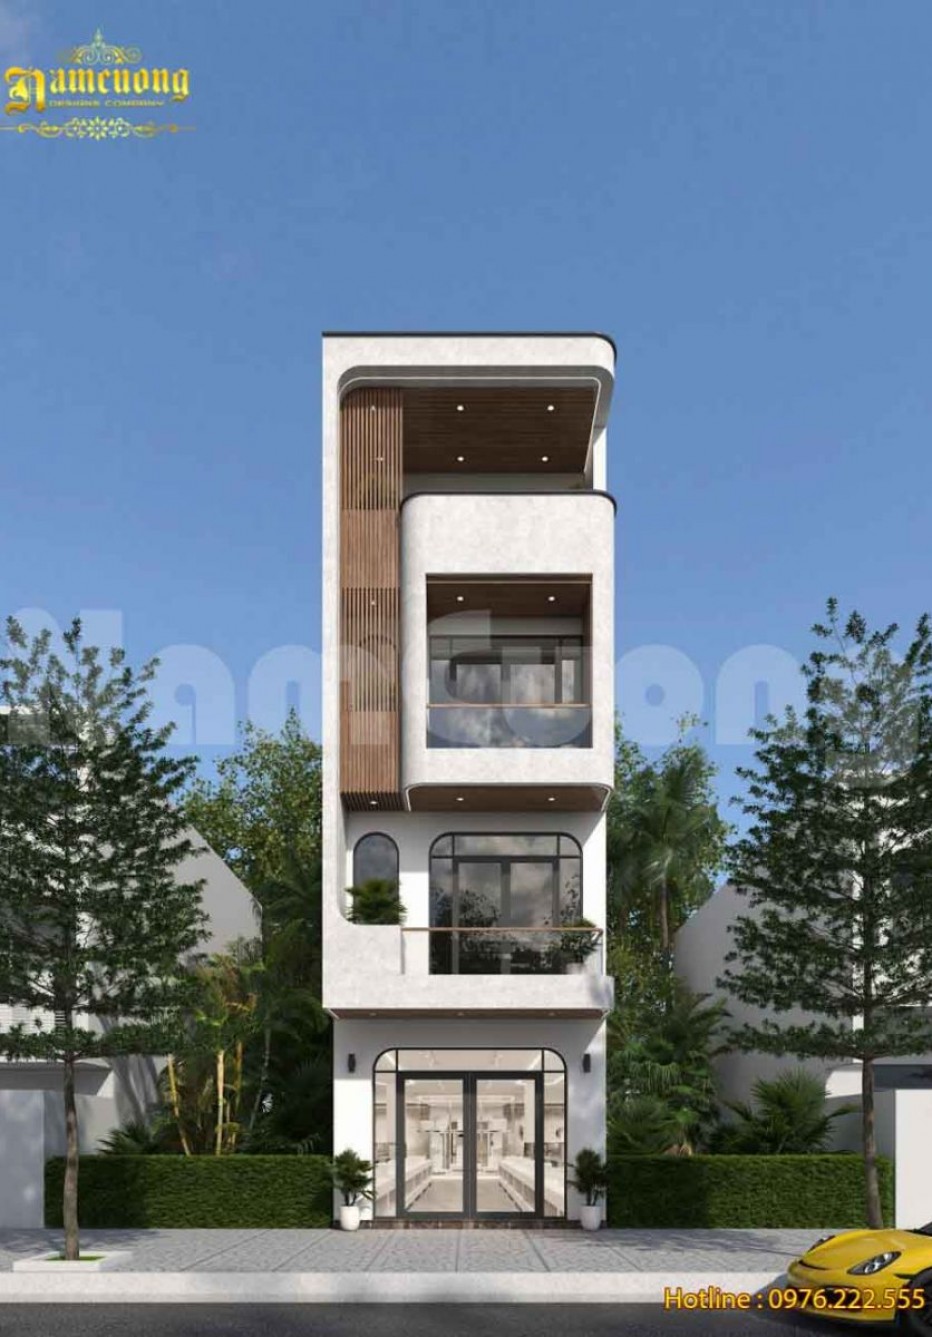 Ngắm nhìn mẫu thiết kế nhà phố 4 tầng đẹp tại Nam Định - NP2304